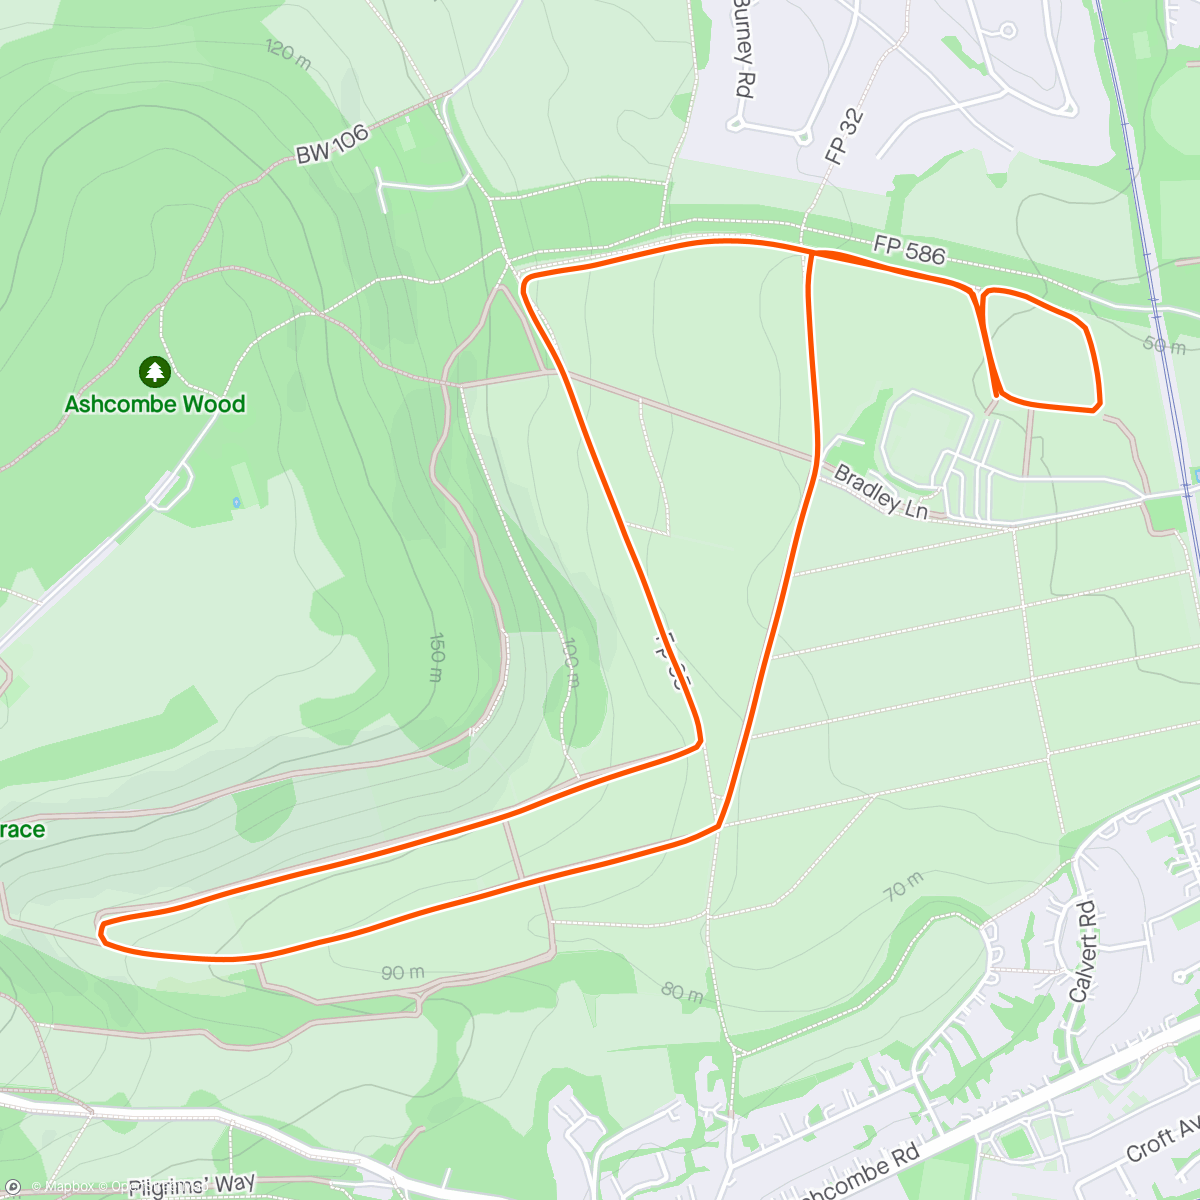 「Mole Valley Parkrun」活動的地圖